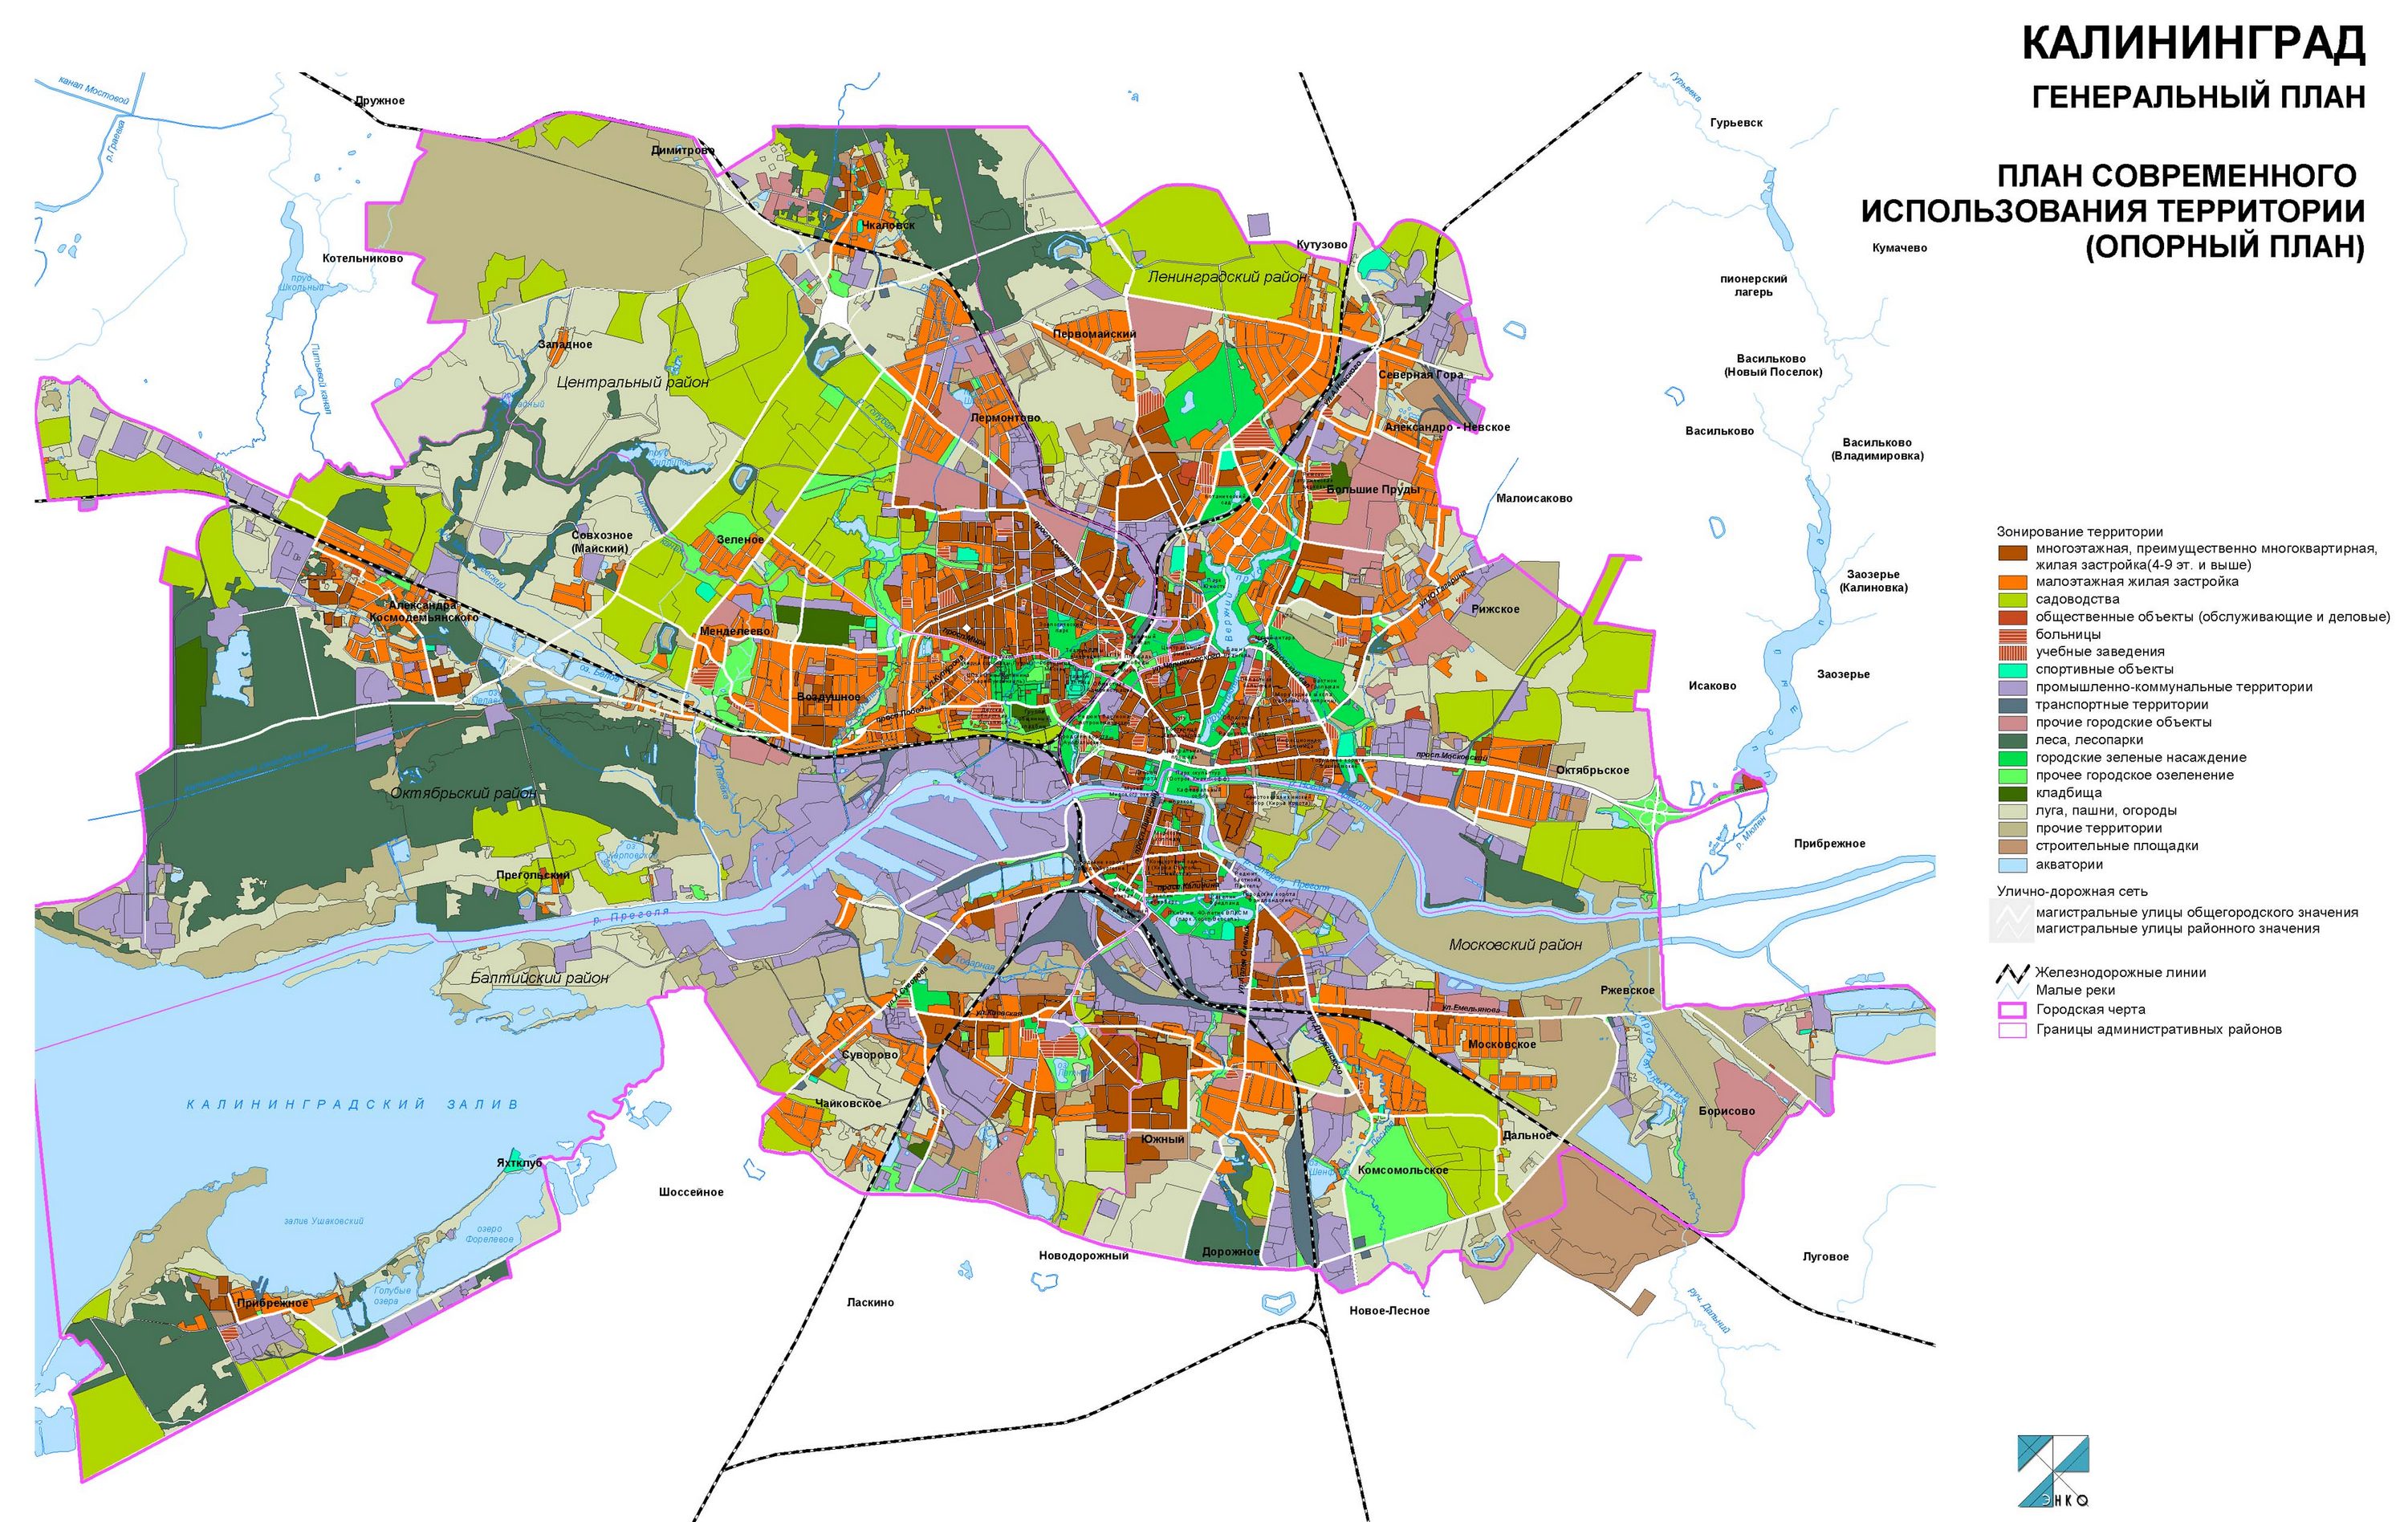 Функциональное зонирование (современное состояние территории по категориям) в соответствии с действующим Генеральным планом Калининграда до 2015 года